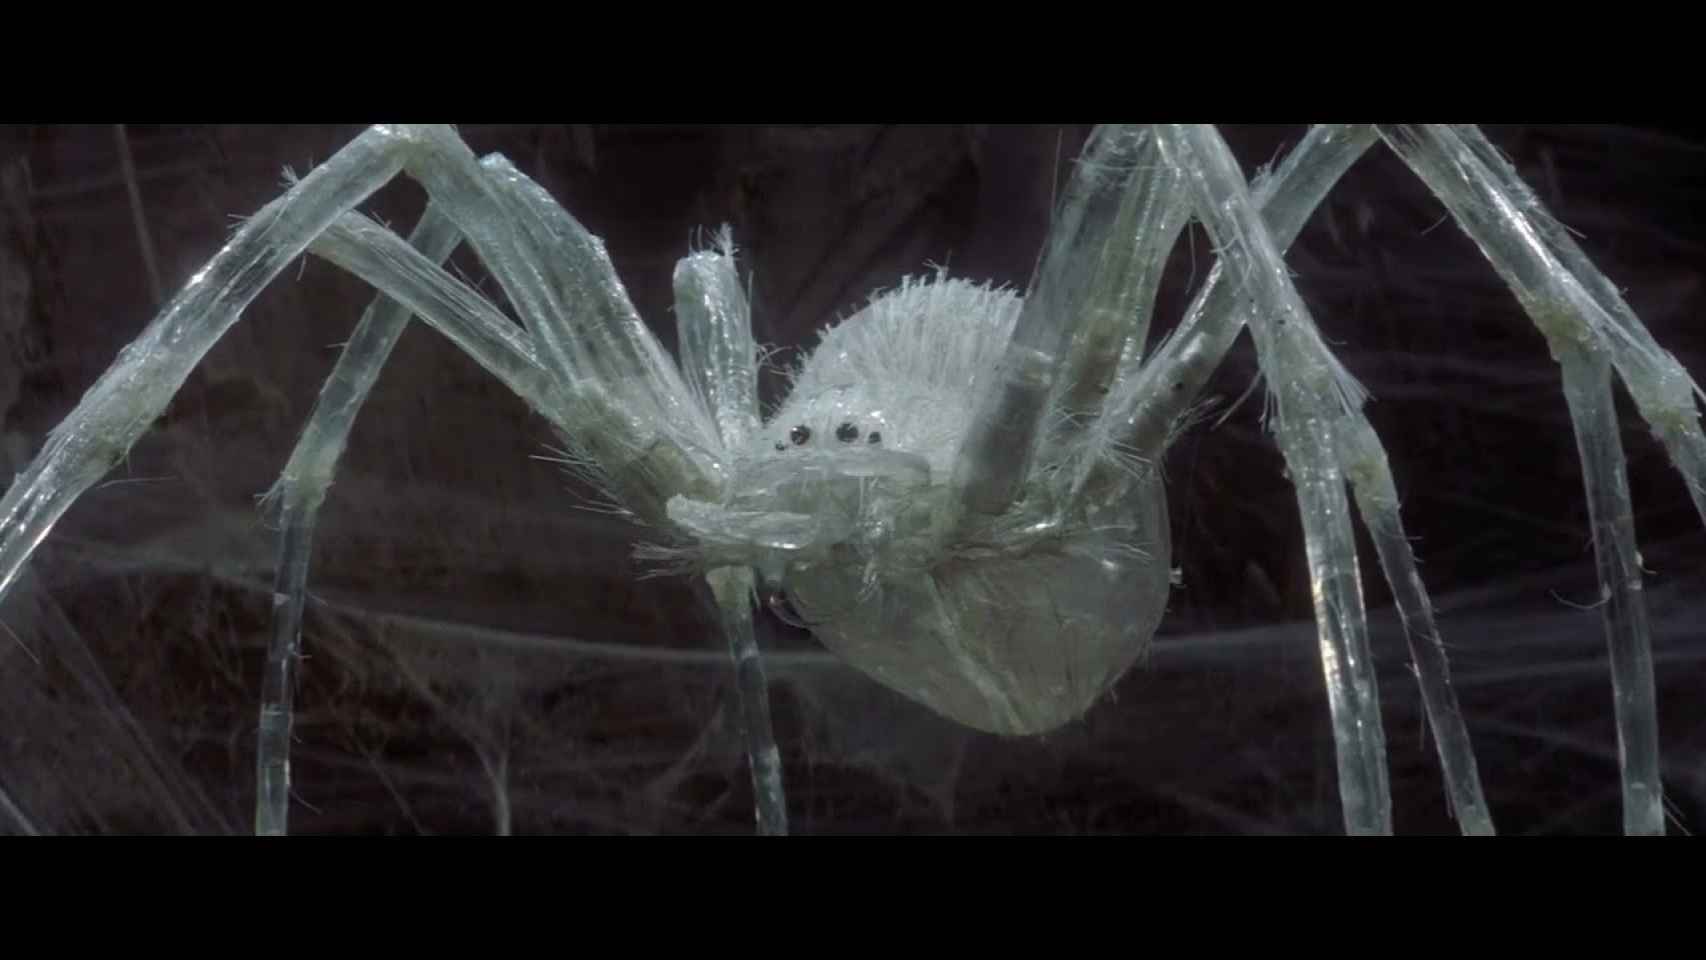 La cristalina araña de Krull (1983), extraña metáfora del Tiempo y la vejez.